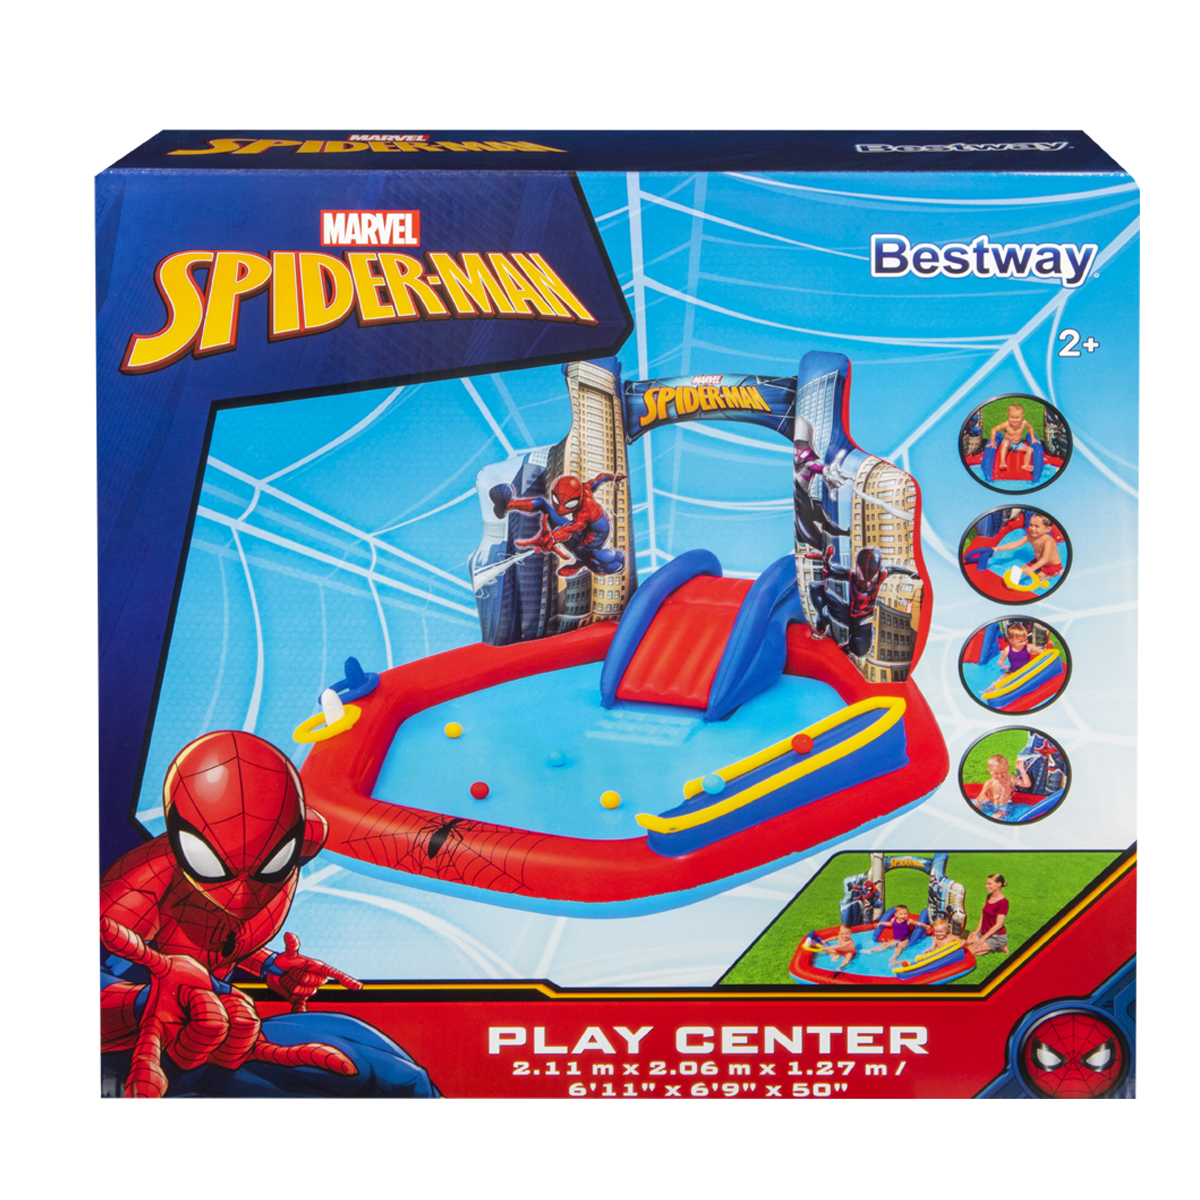 Juego de Patio Bestway Spiderman 2.11m x 2.06m - 990482